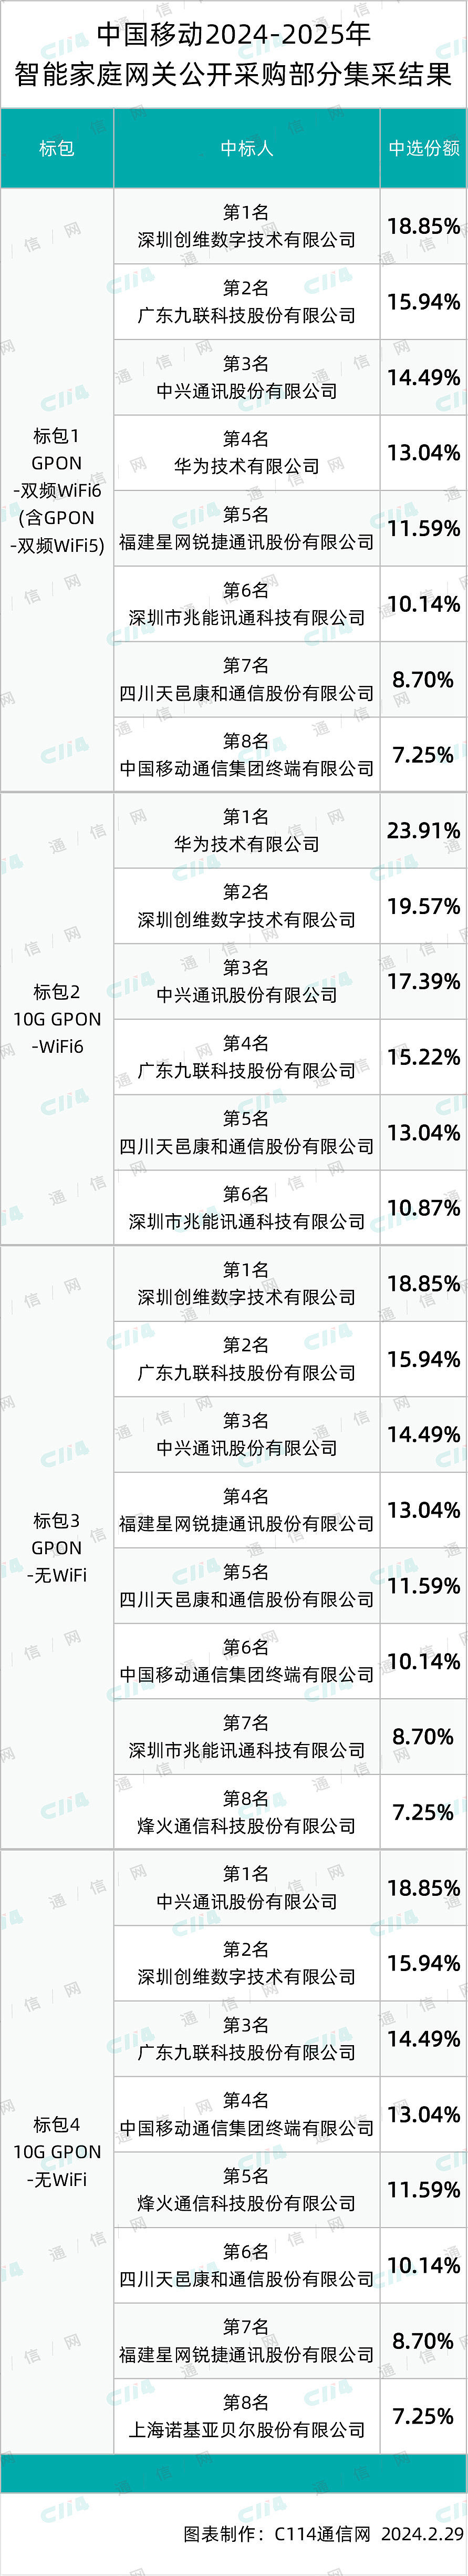 中国移动 7593.51 万台智能家庭网关集采：创维、中兴、华为、九联等 10 家中标 - 1